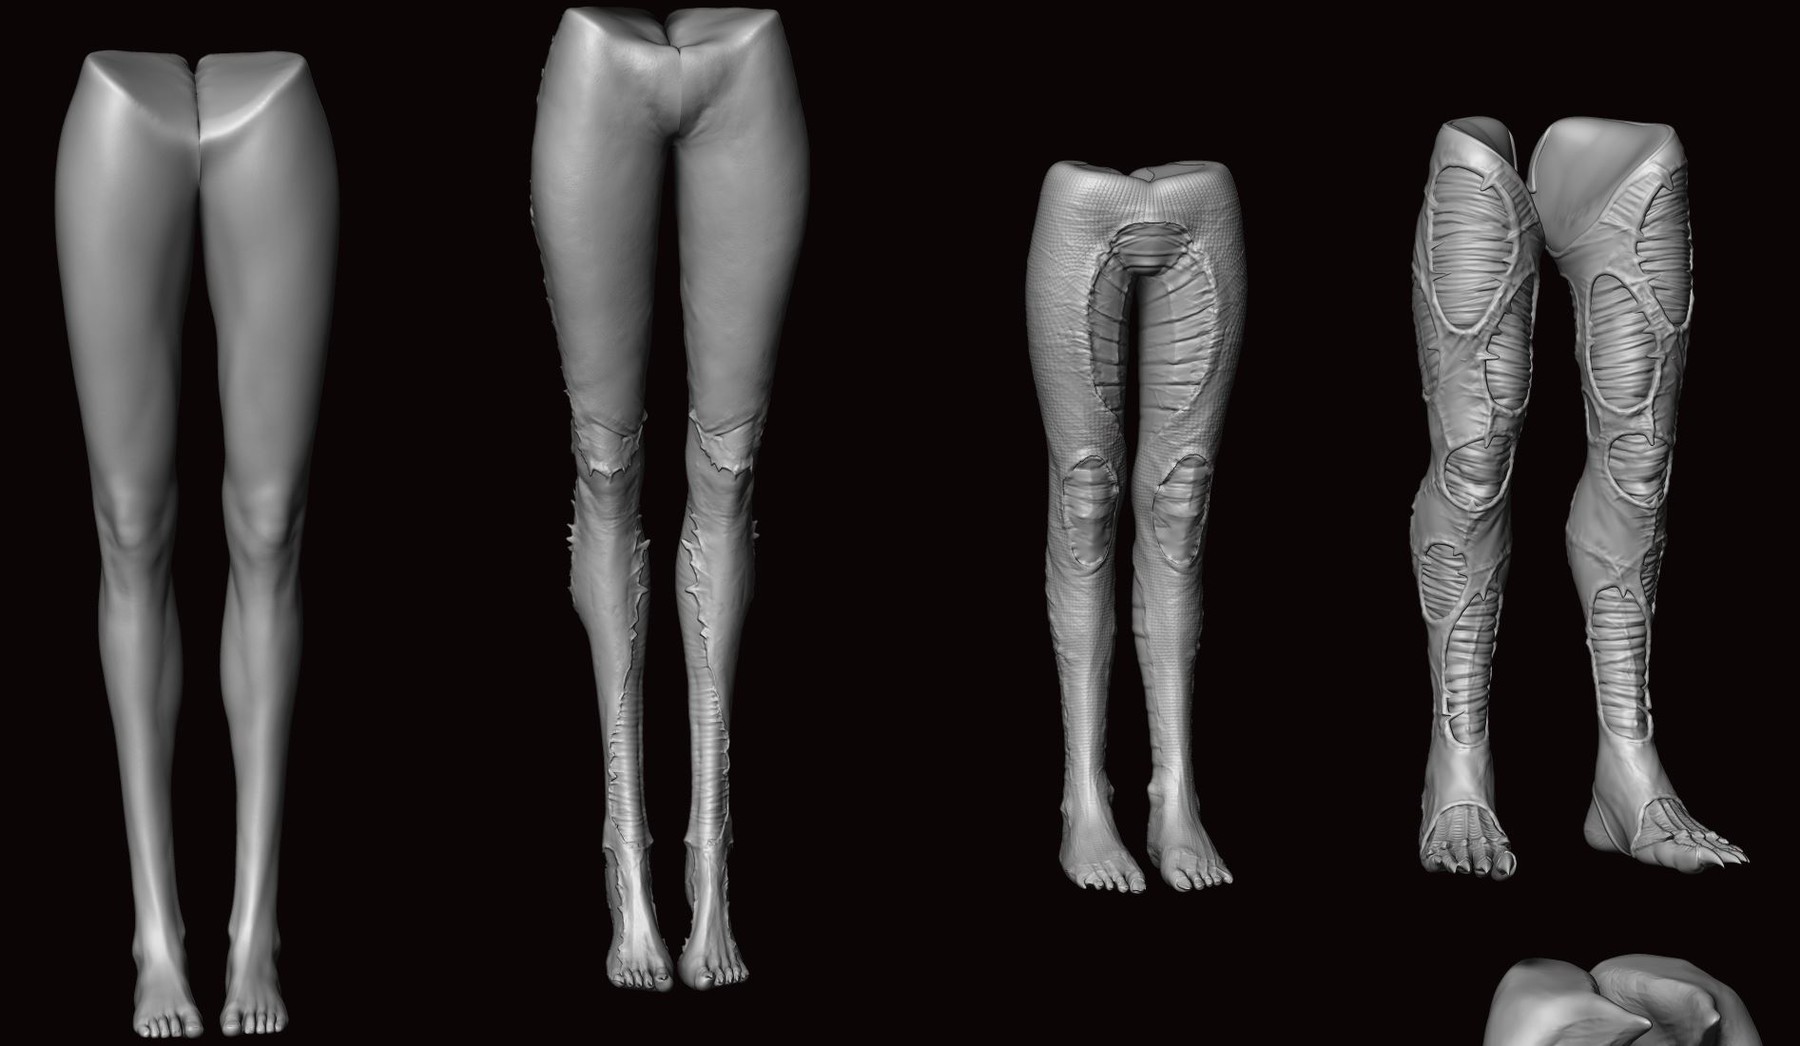 Healed Full Leg Sleeve by Labo-O-Kult on DeviantArt